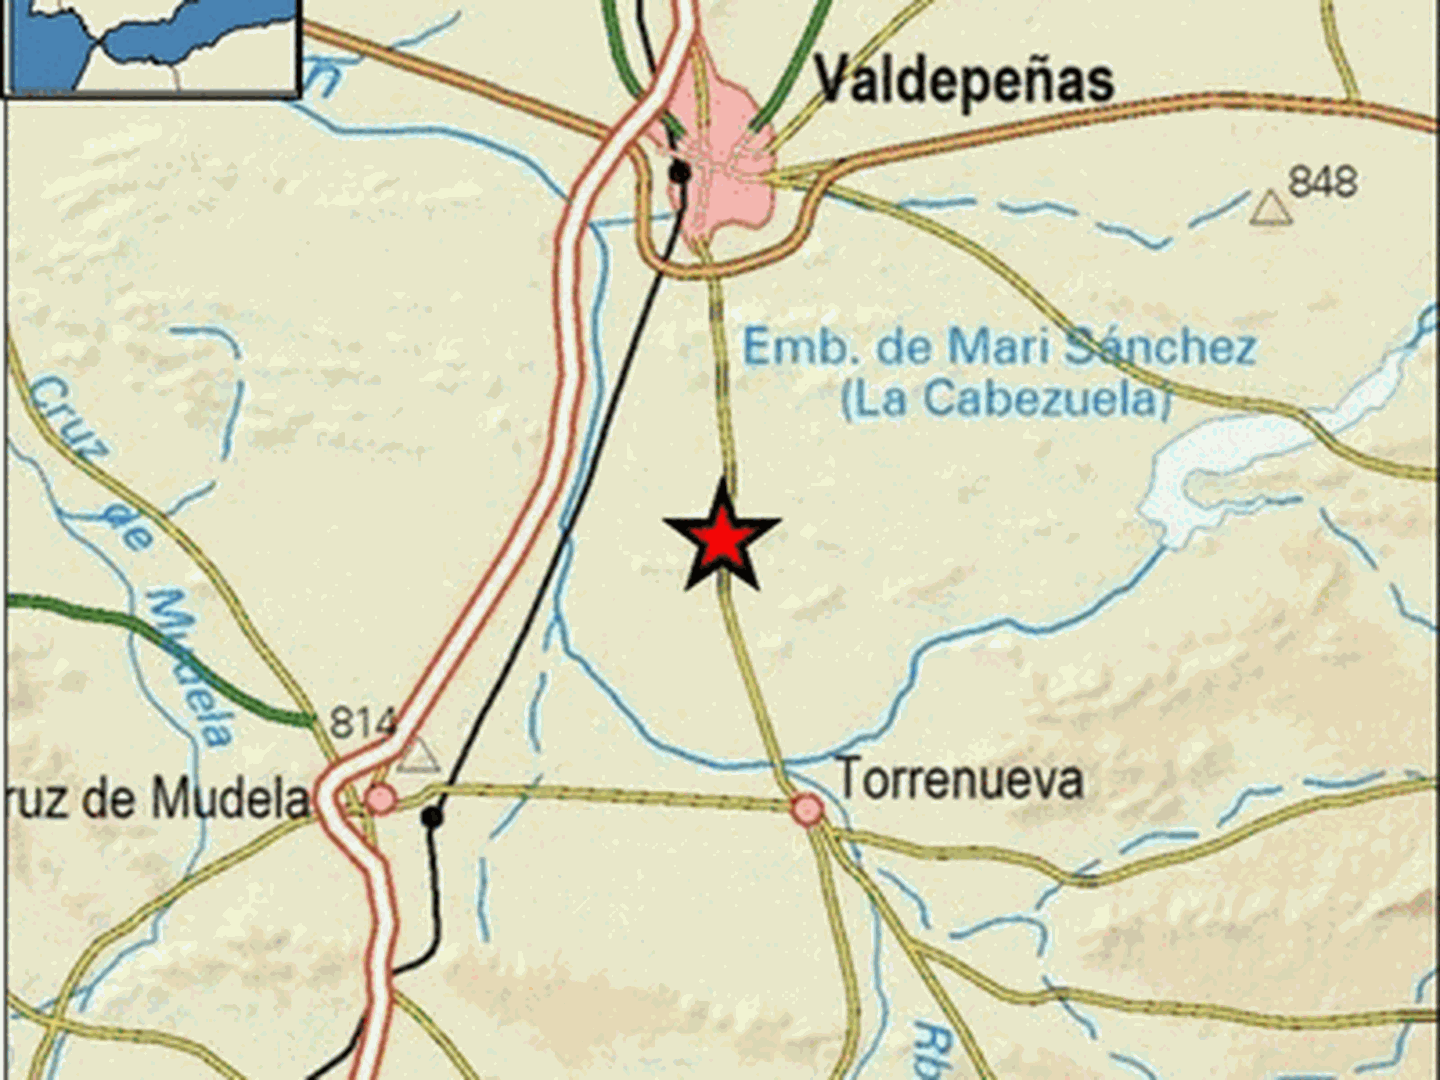 Epicentro del terremoto en las proximidades de Valdepeñas. (IGN)